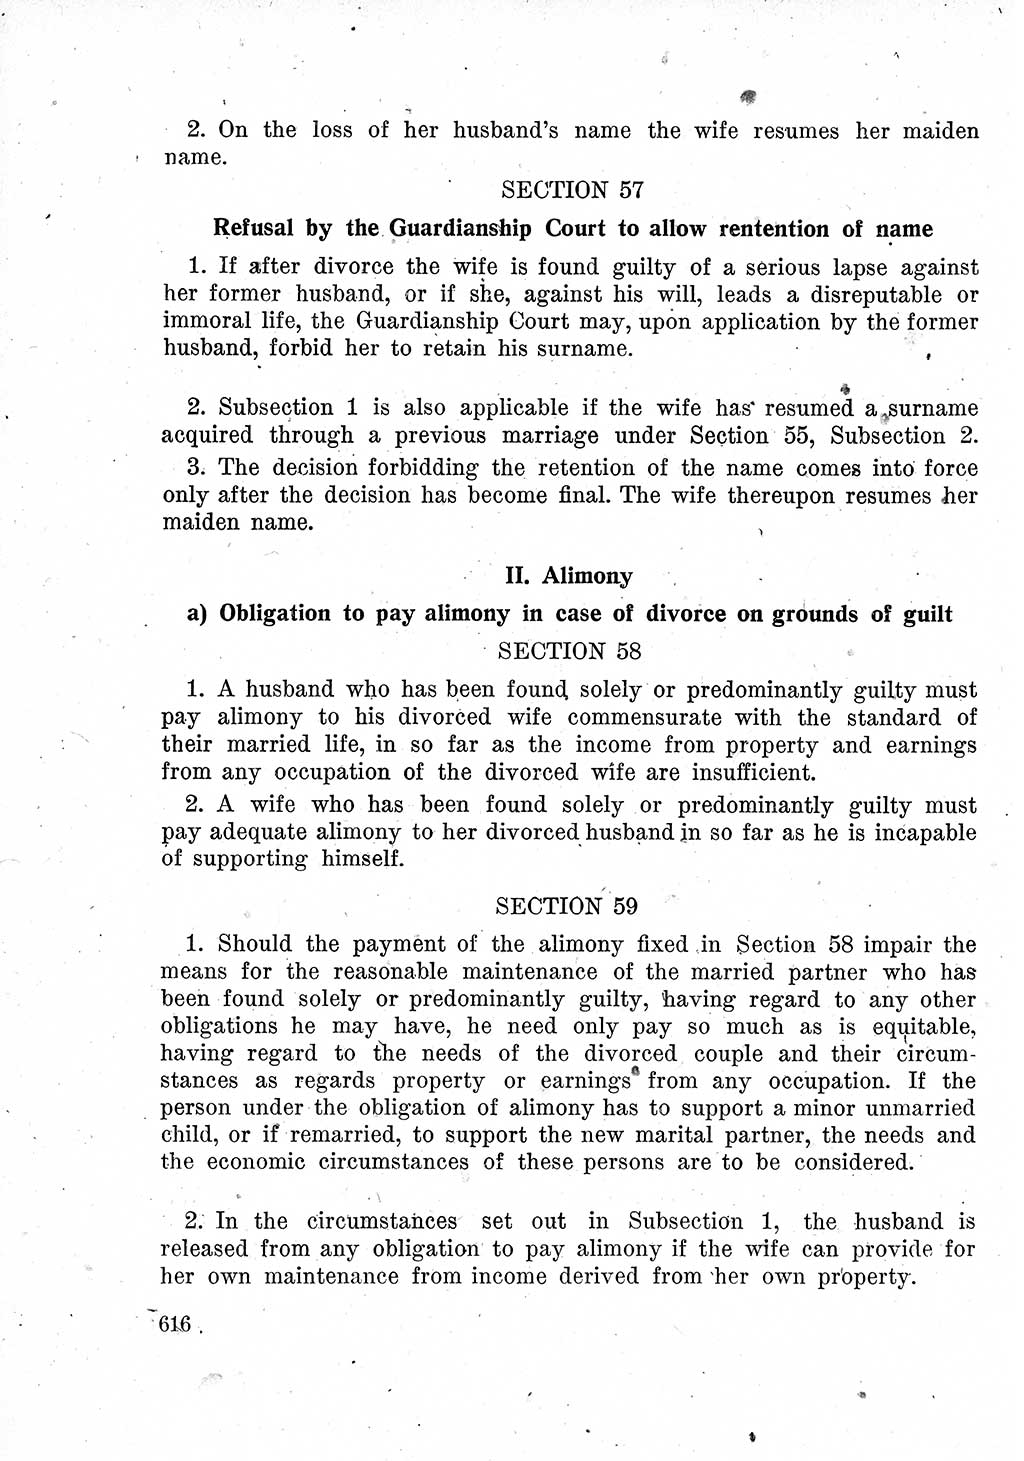 Das Recht der Besatzungsmacht (Deutschland), Proklamationen, Deklerationen, Verordnungen, Gesetze und Bekanntmachungen 1947, Seite 616 (R. Bes. Dtl. 1947, S. 616)